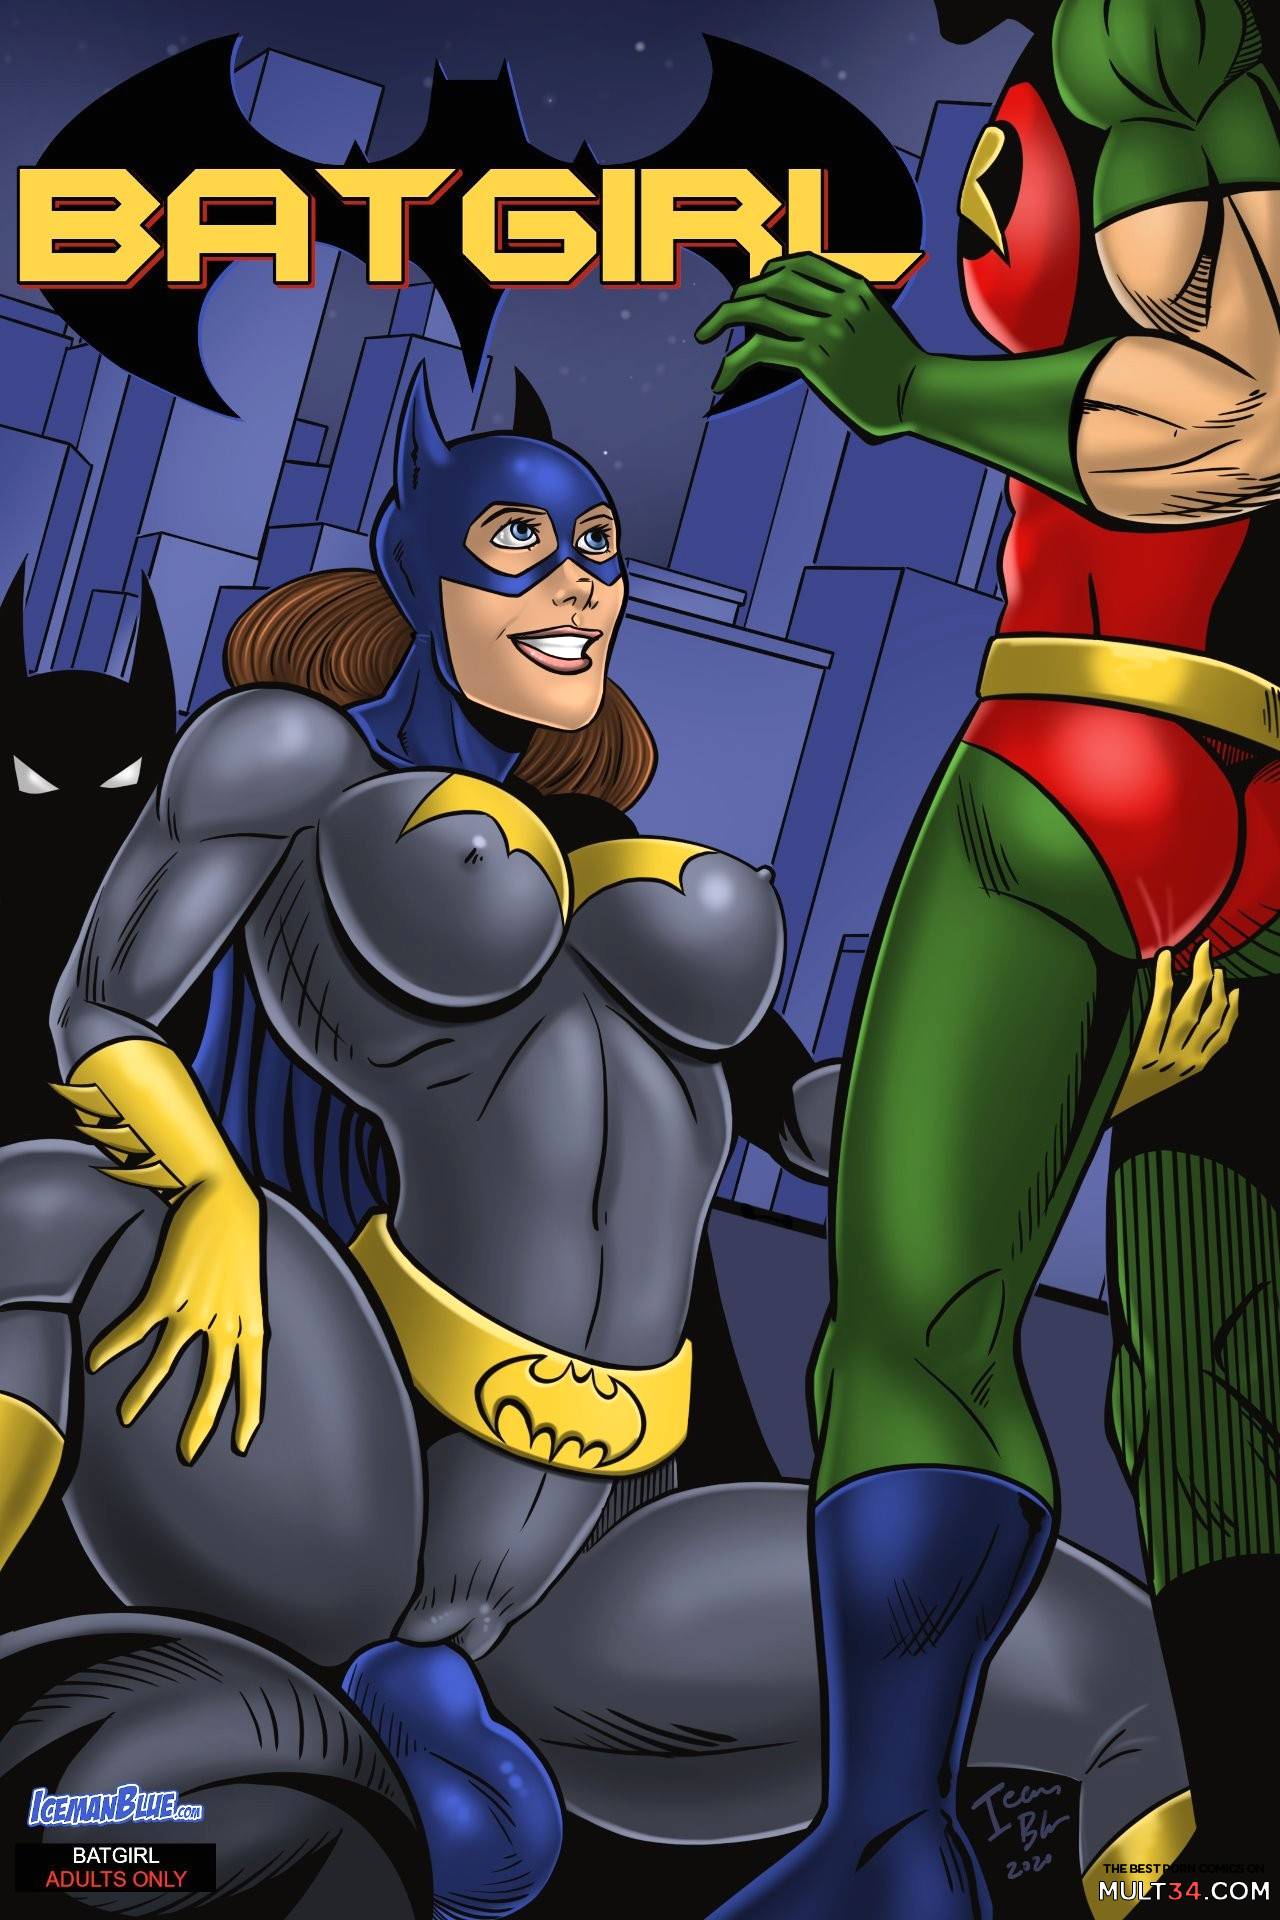 Batgirl comic porno sexy